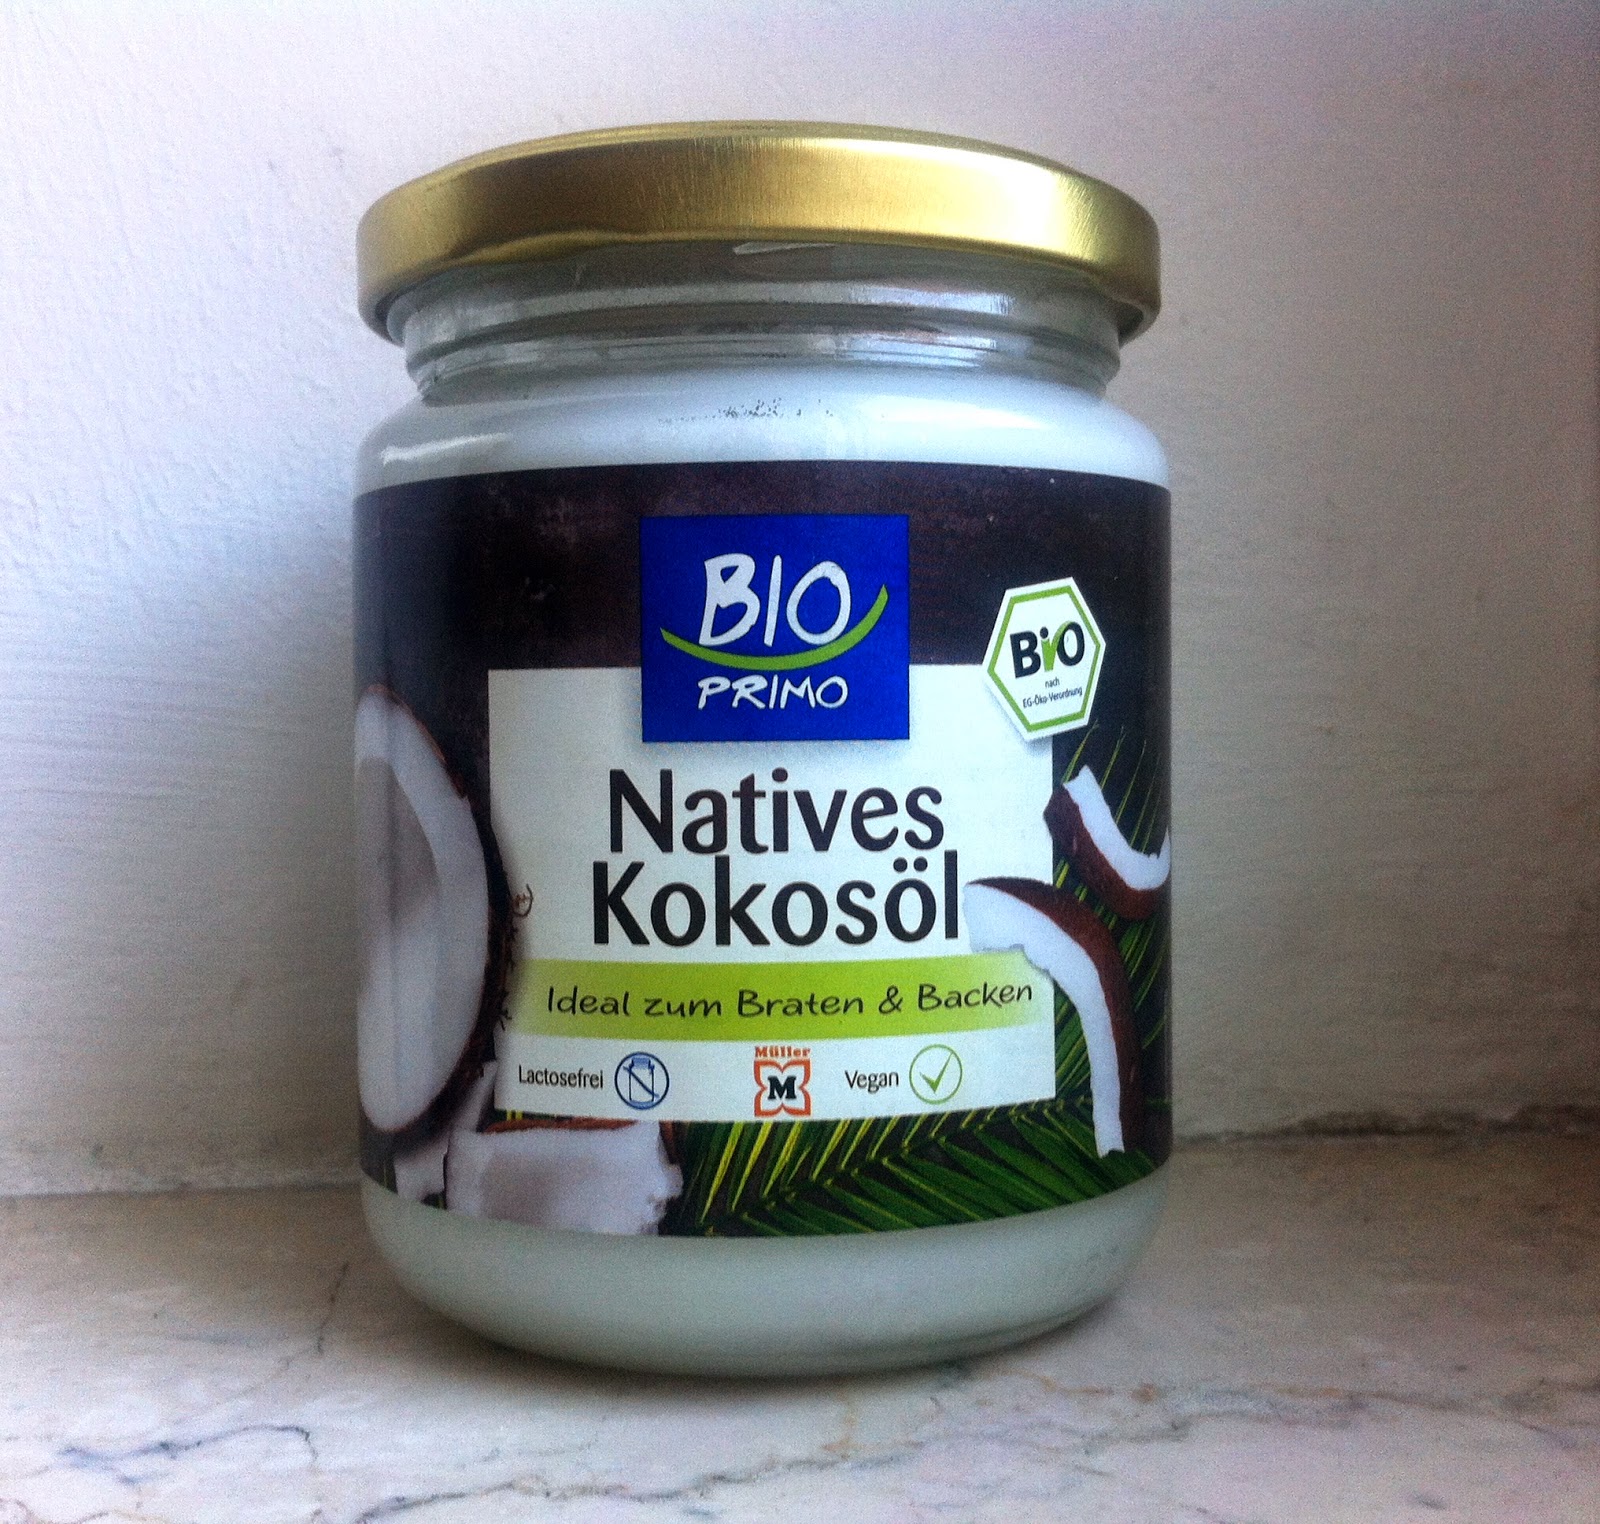 Kolor Karlotta Bio Primo Natives Kokosol